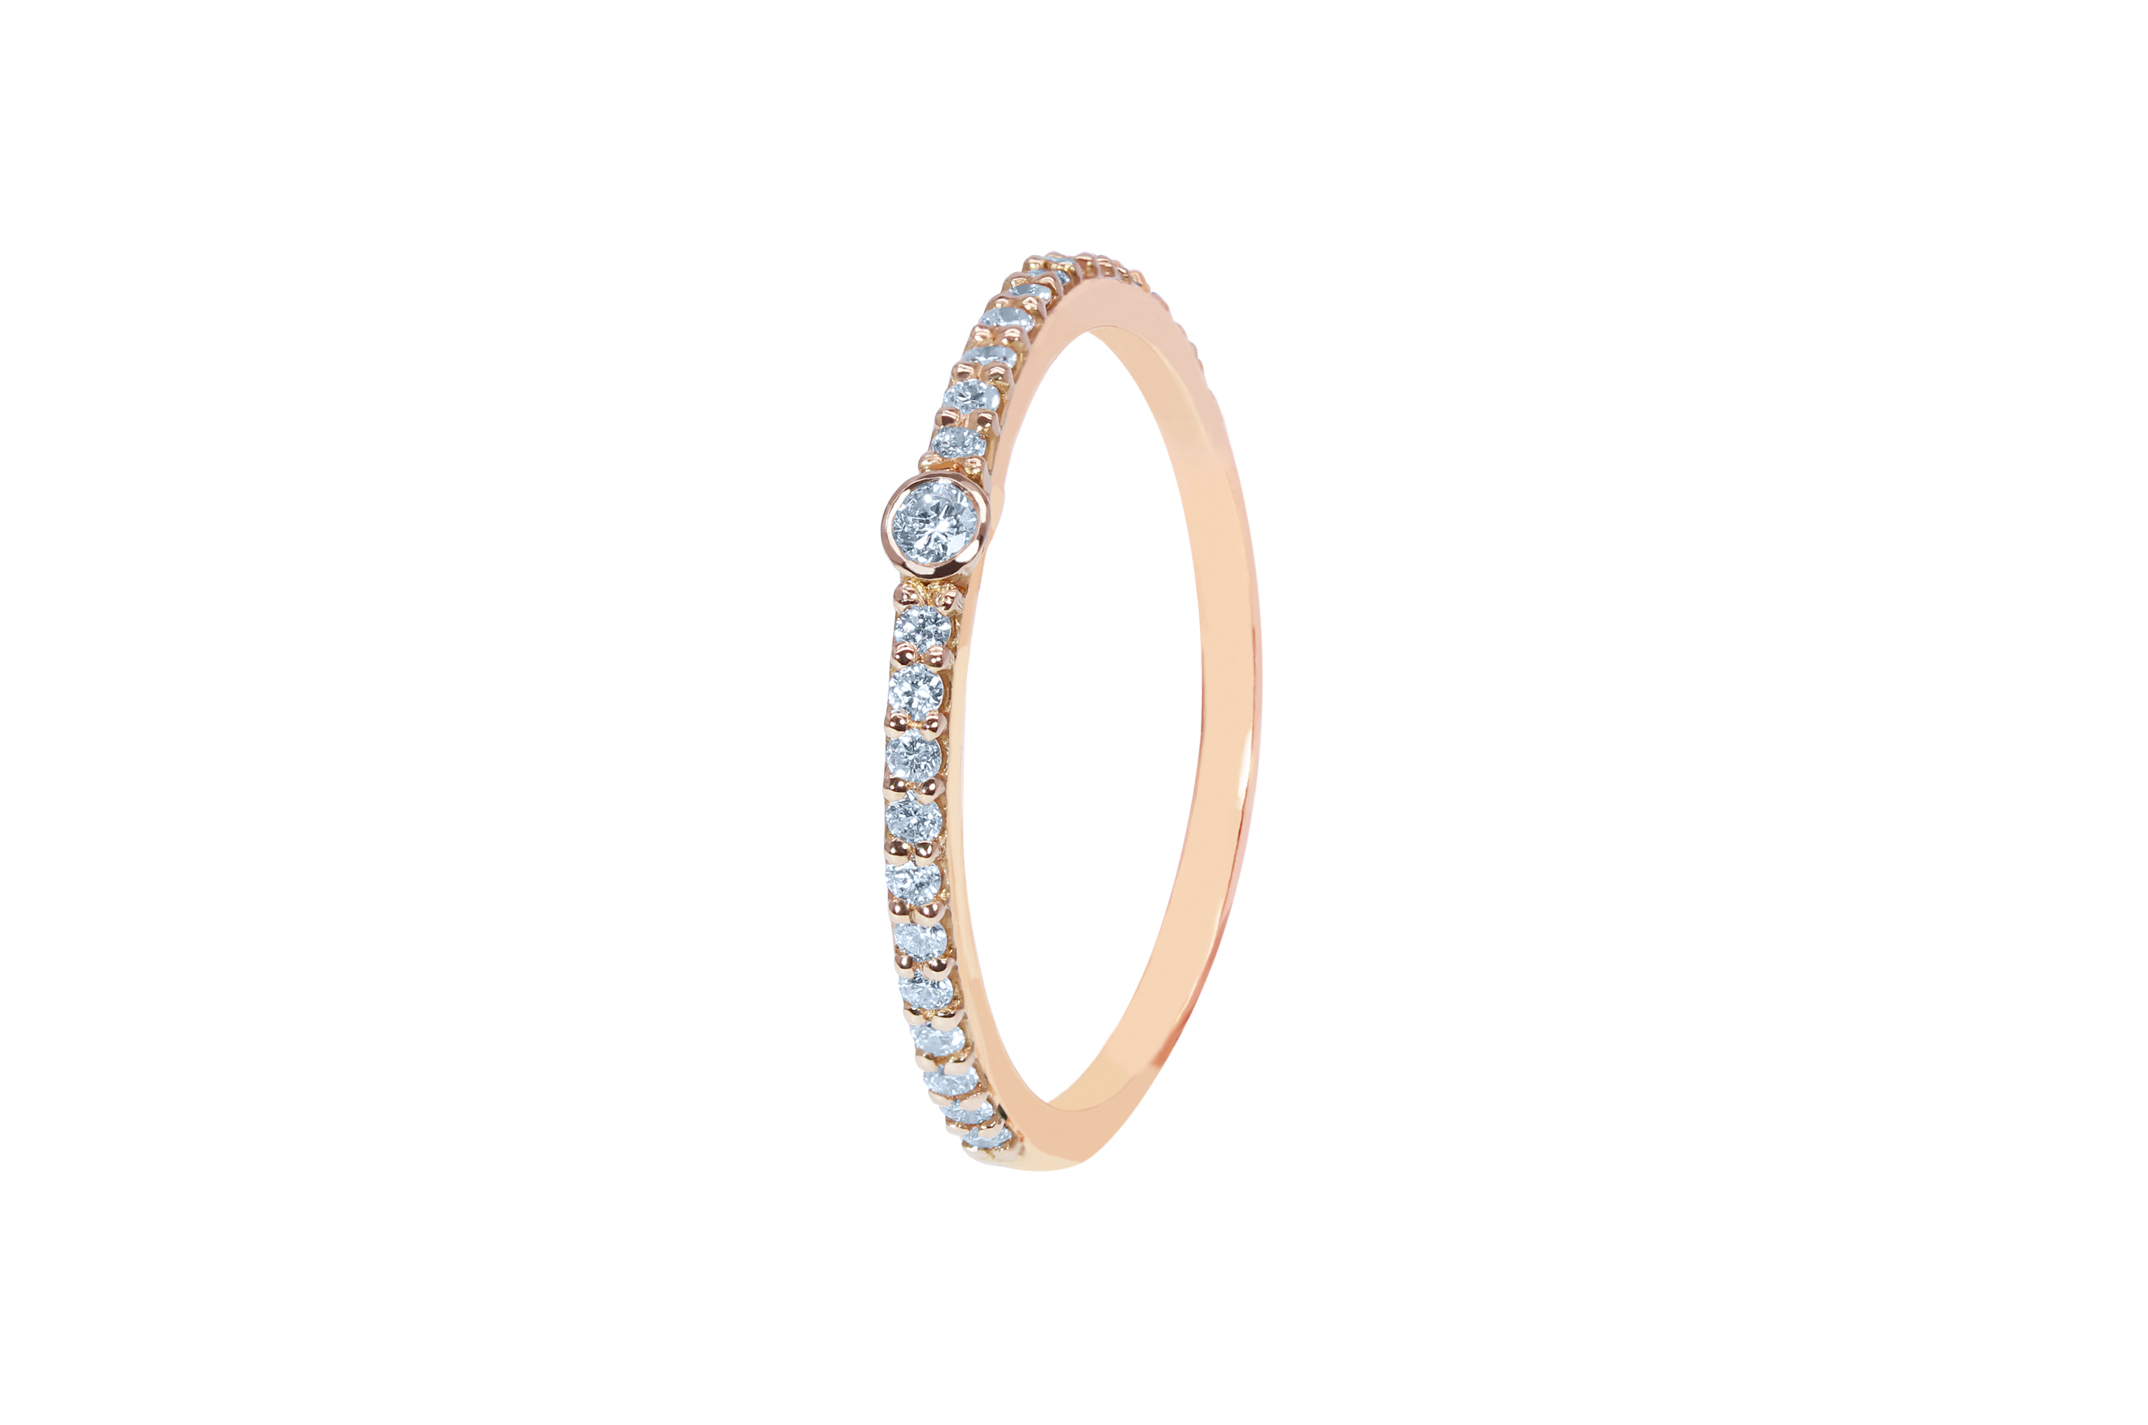 Joia: anel;Material: ouro 19.25kt;Peso: 1.80 gr;Pedras: 23 diamantes - 0.30ct HSV1;Cor: cor-de-rosa;Género: mulher